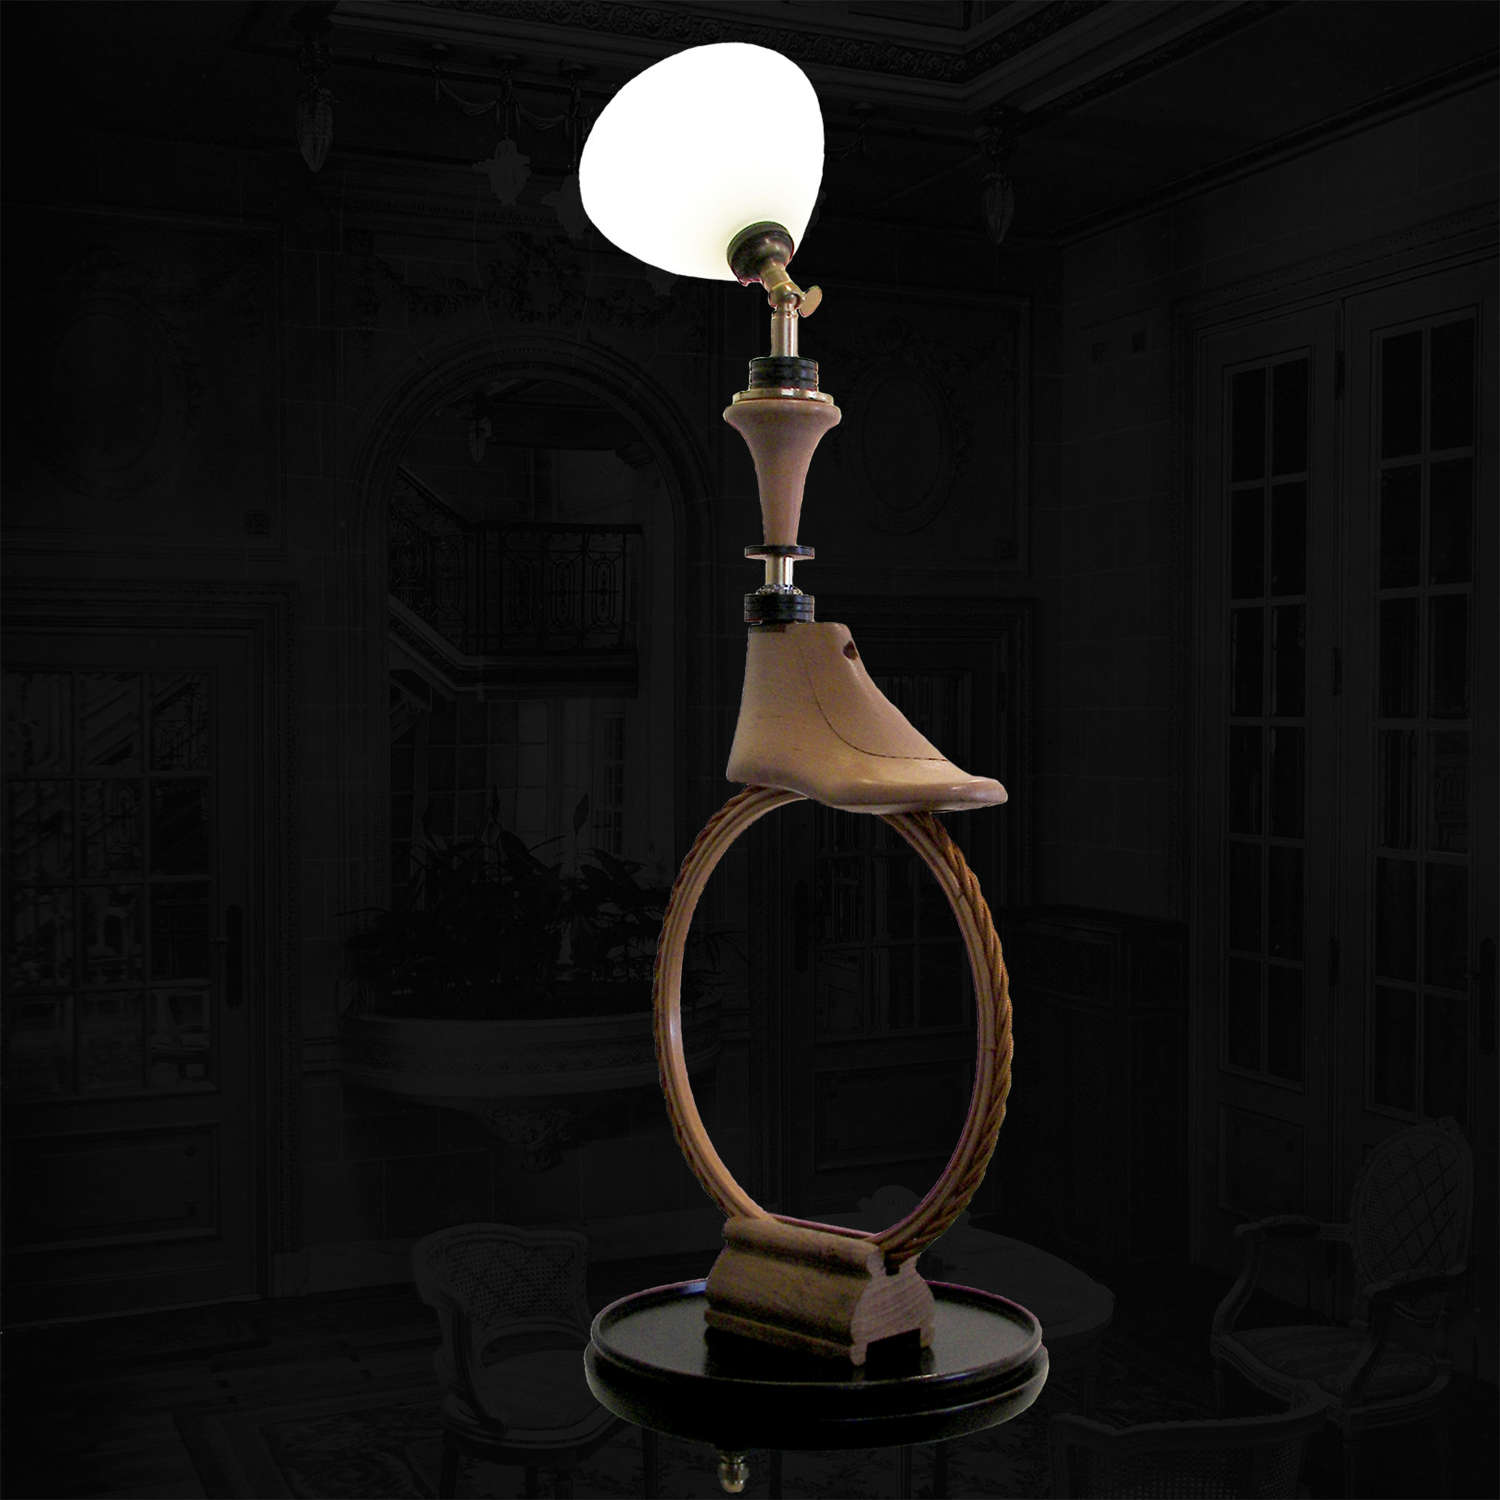 Unique lamp design - Boulevard - by Gilles Bourlet Dartmouth